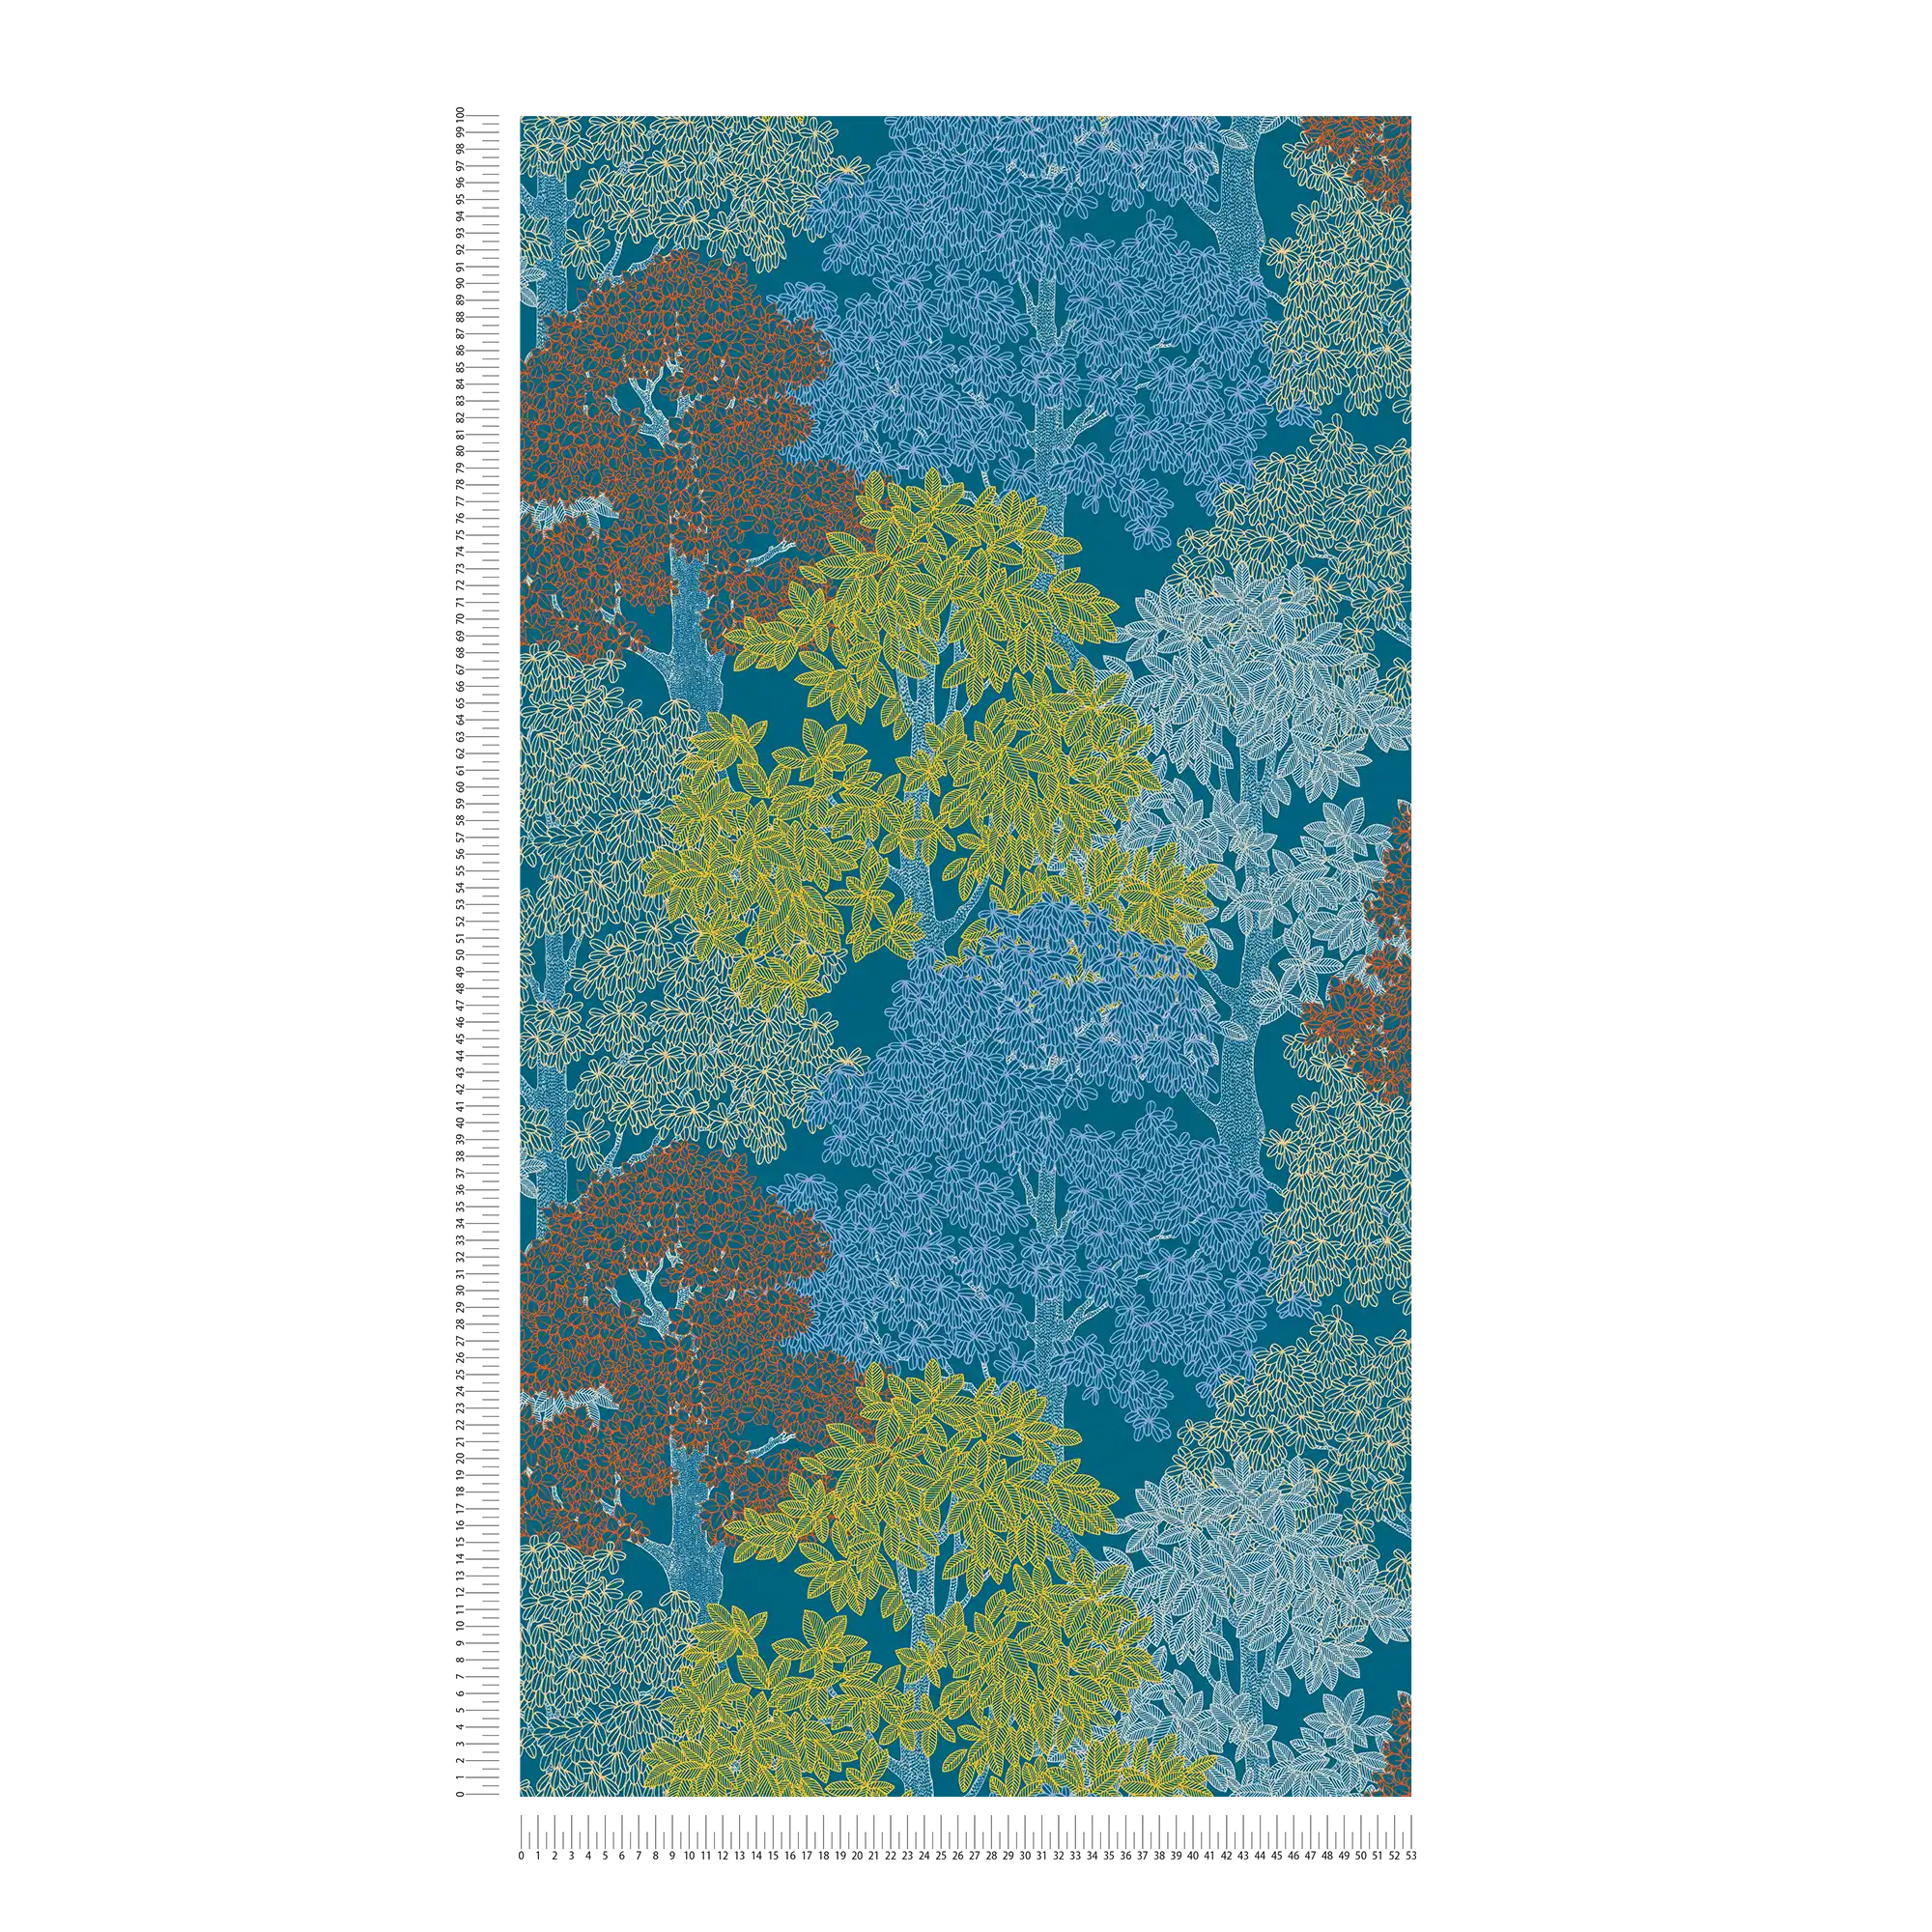             Papel pintado de estilo escandinavo con diseño de árboles - azul, amarillo, rojo
        